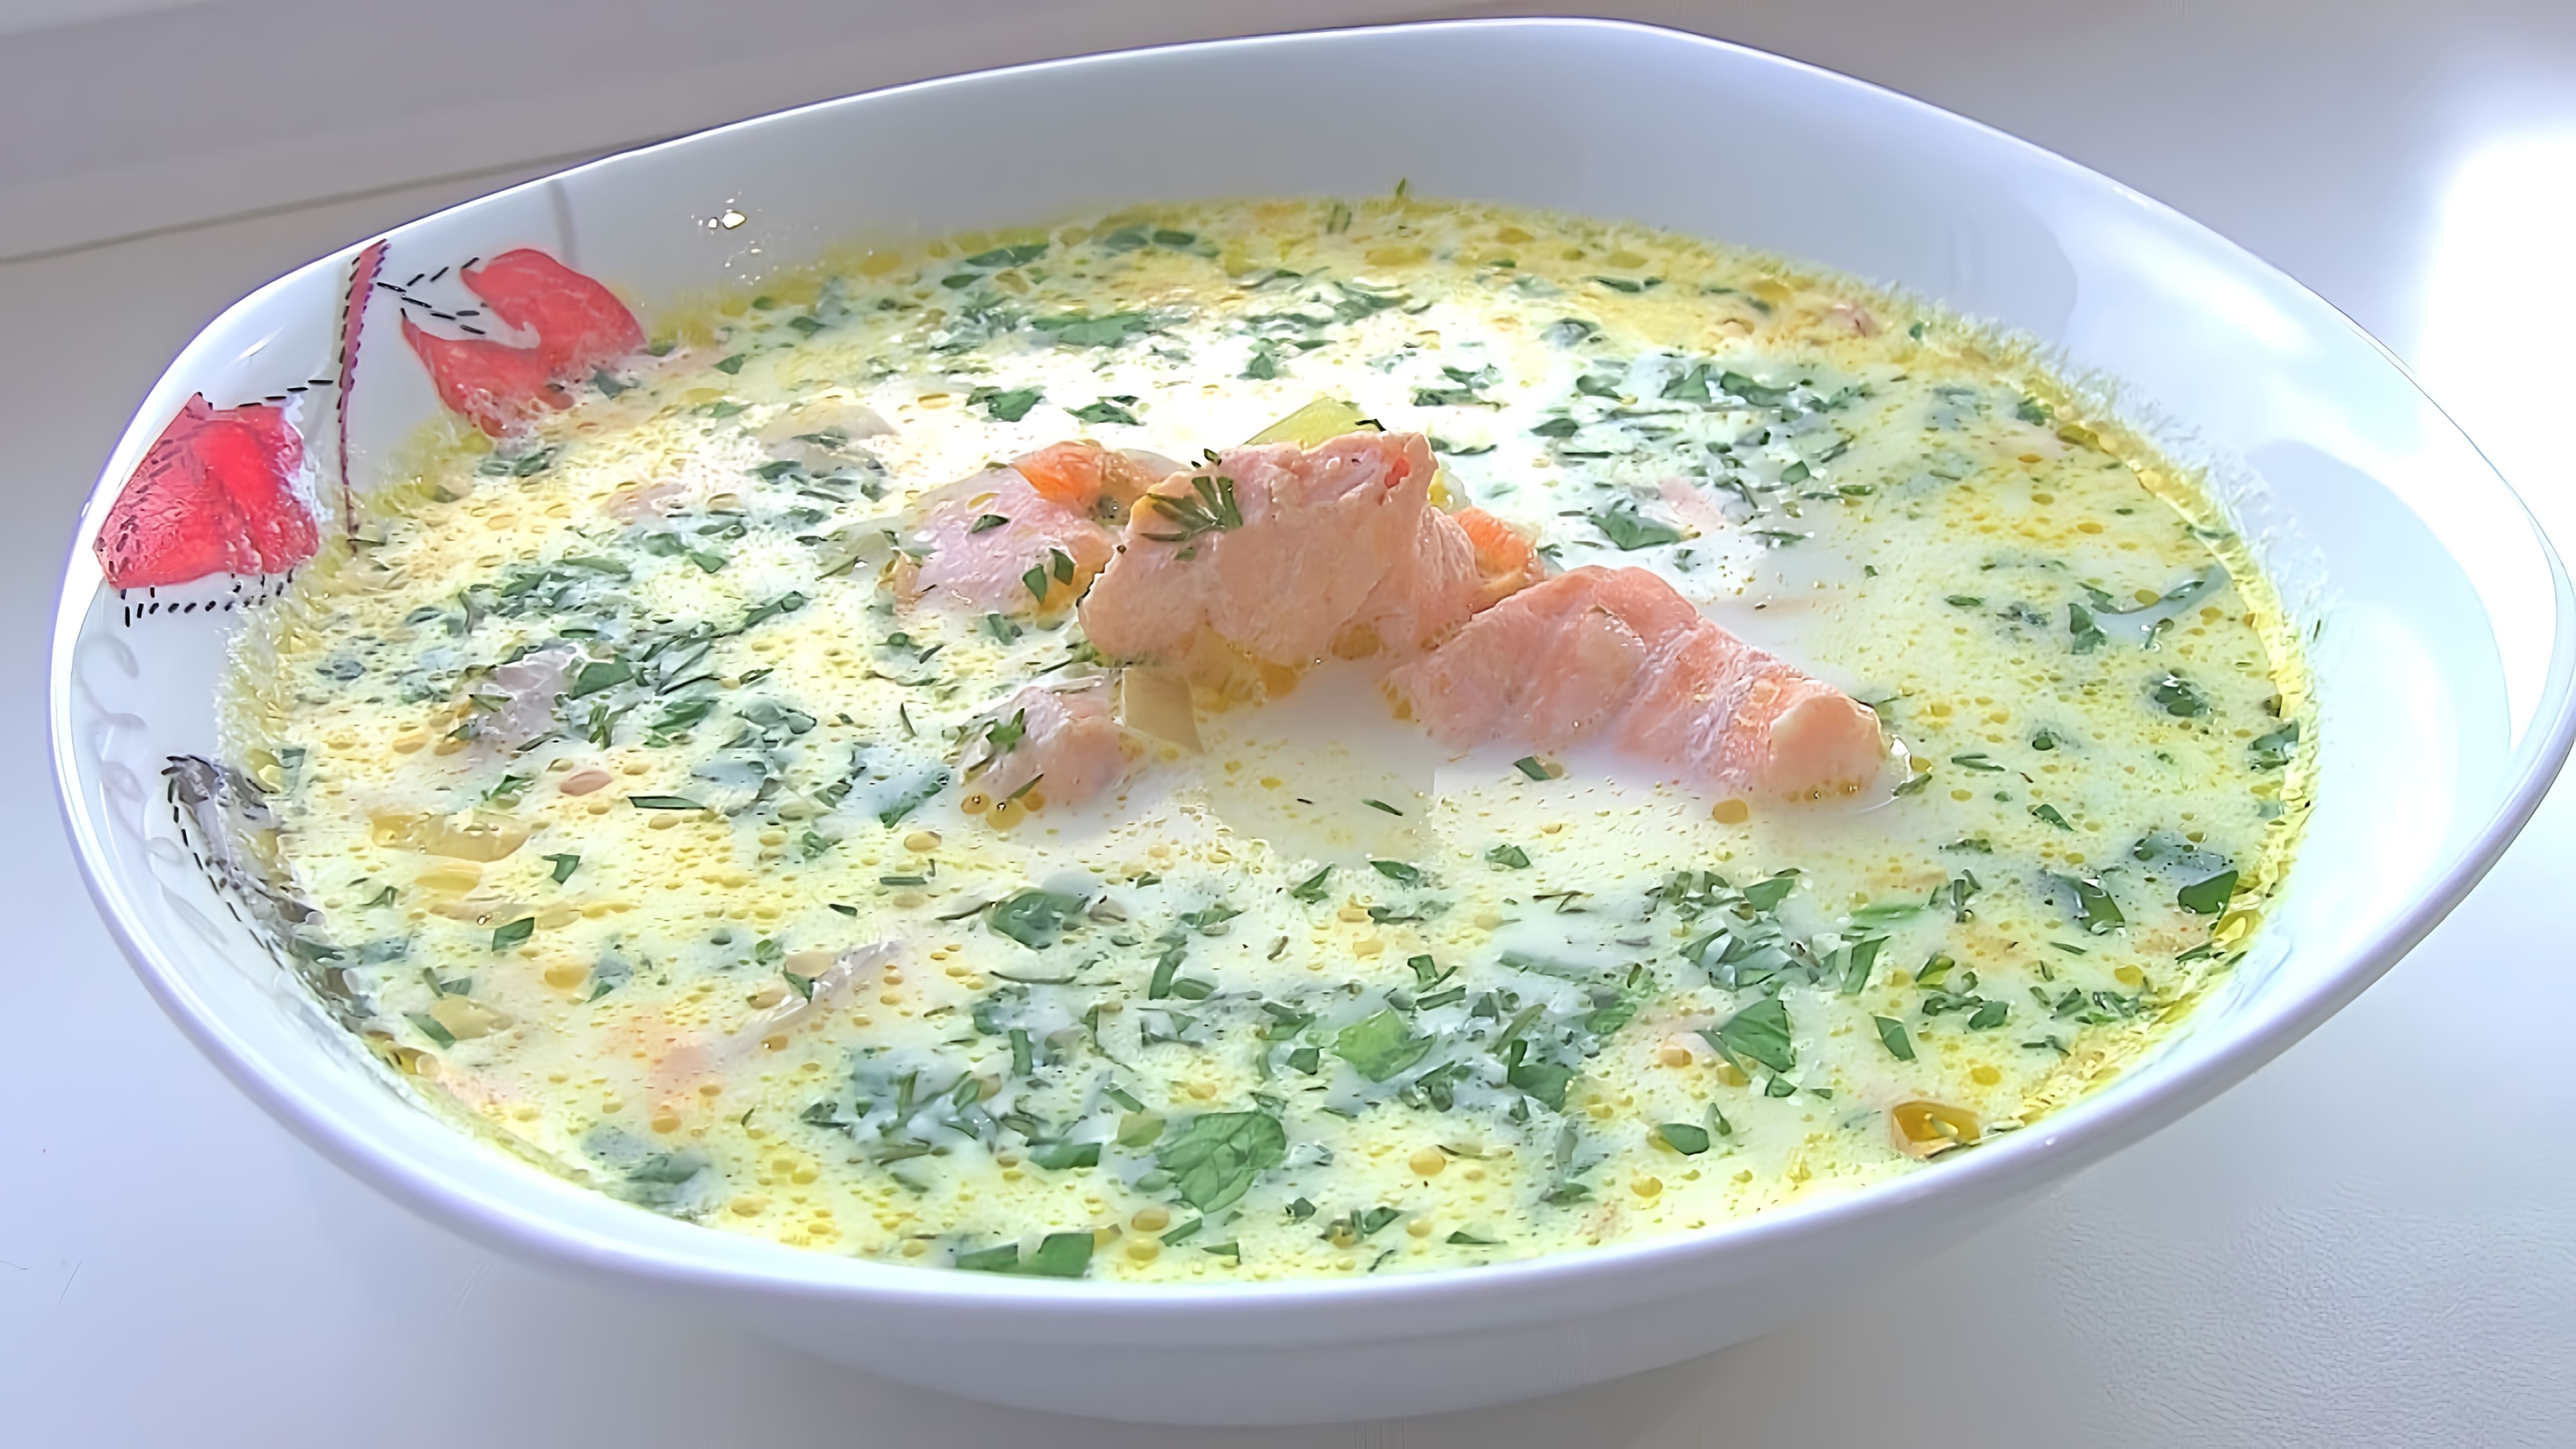 В этом видео демонстрируется процесс приготовления сливочного супа из красной рыбы